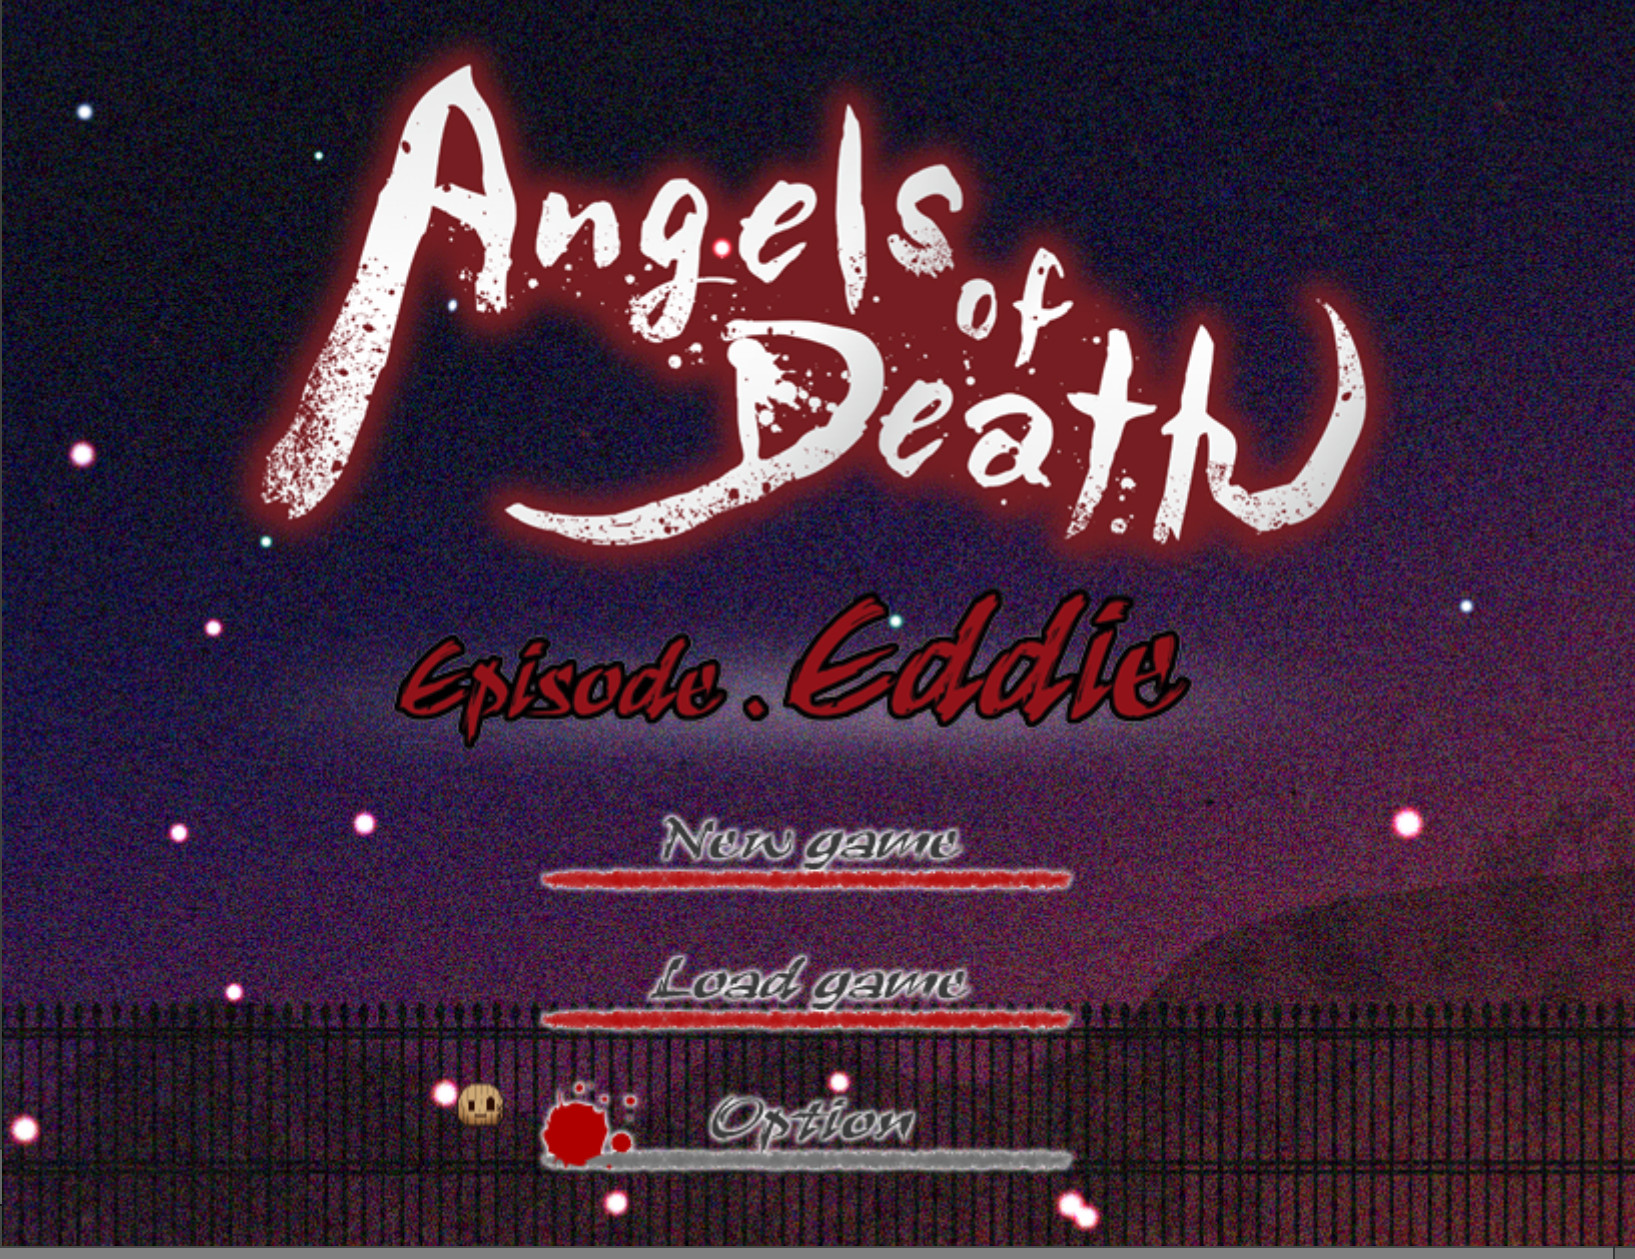 Angels of Death Episode.Eddie screenshot